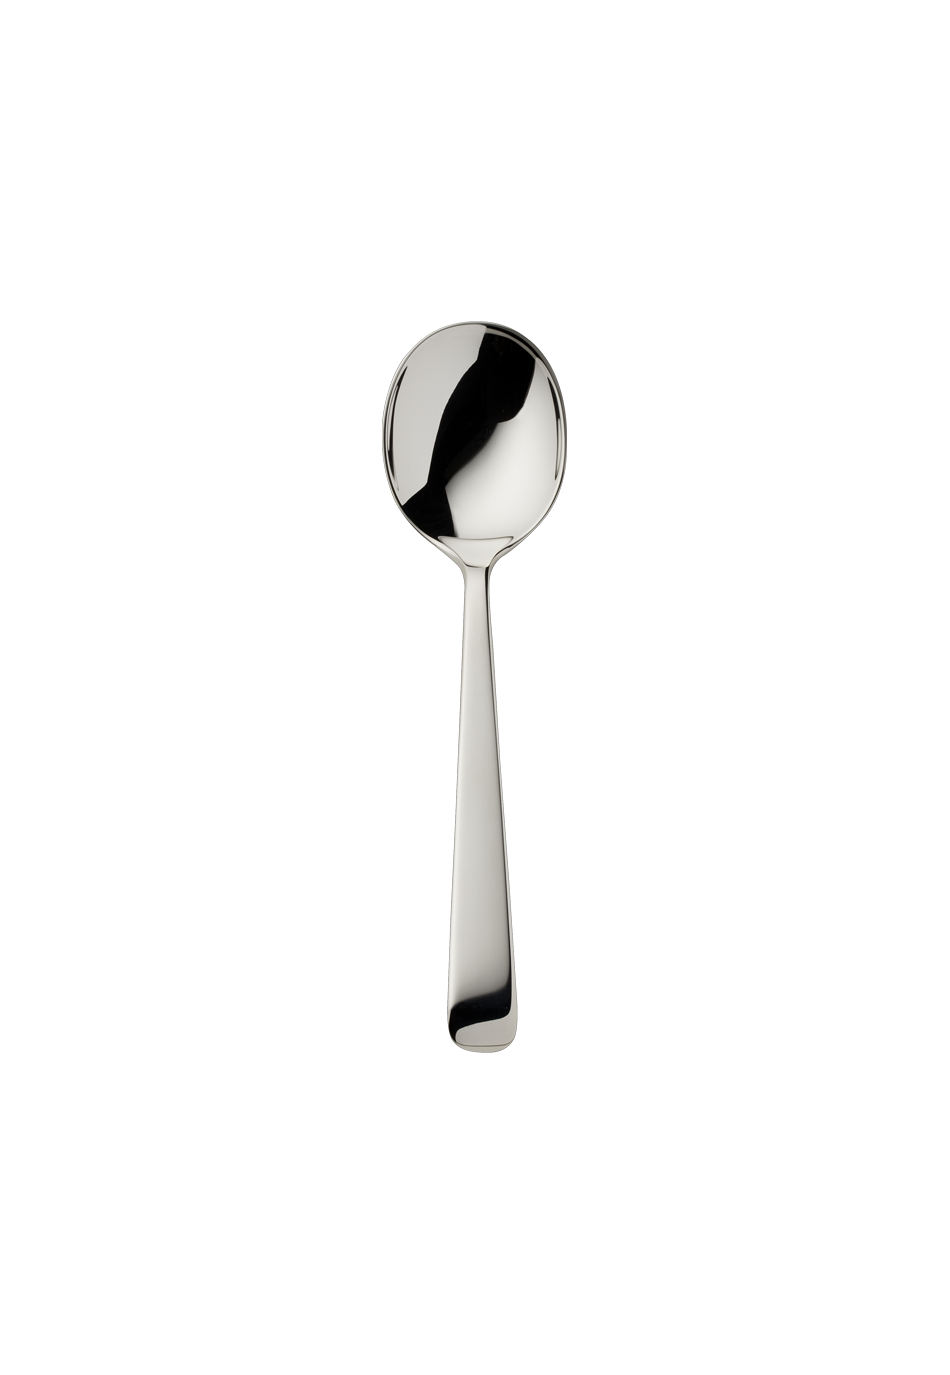 Alta Children's Spoon (150g massive silverplated)